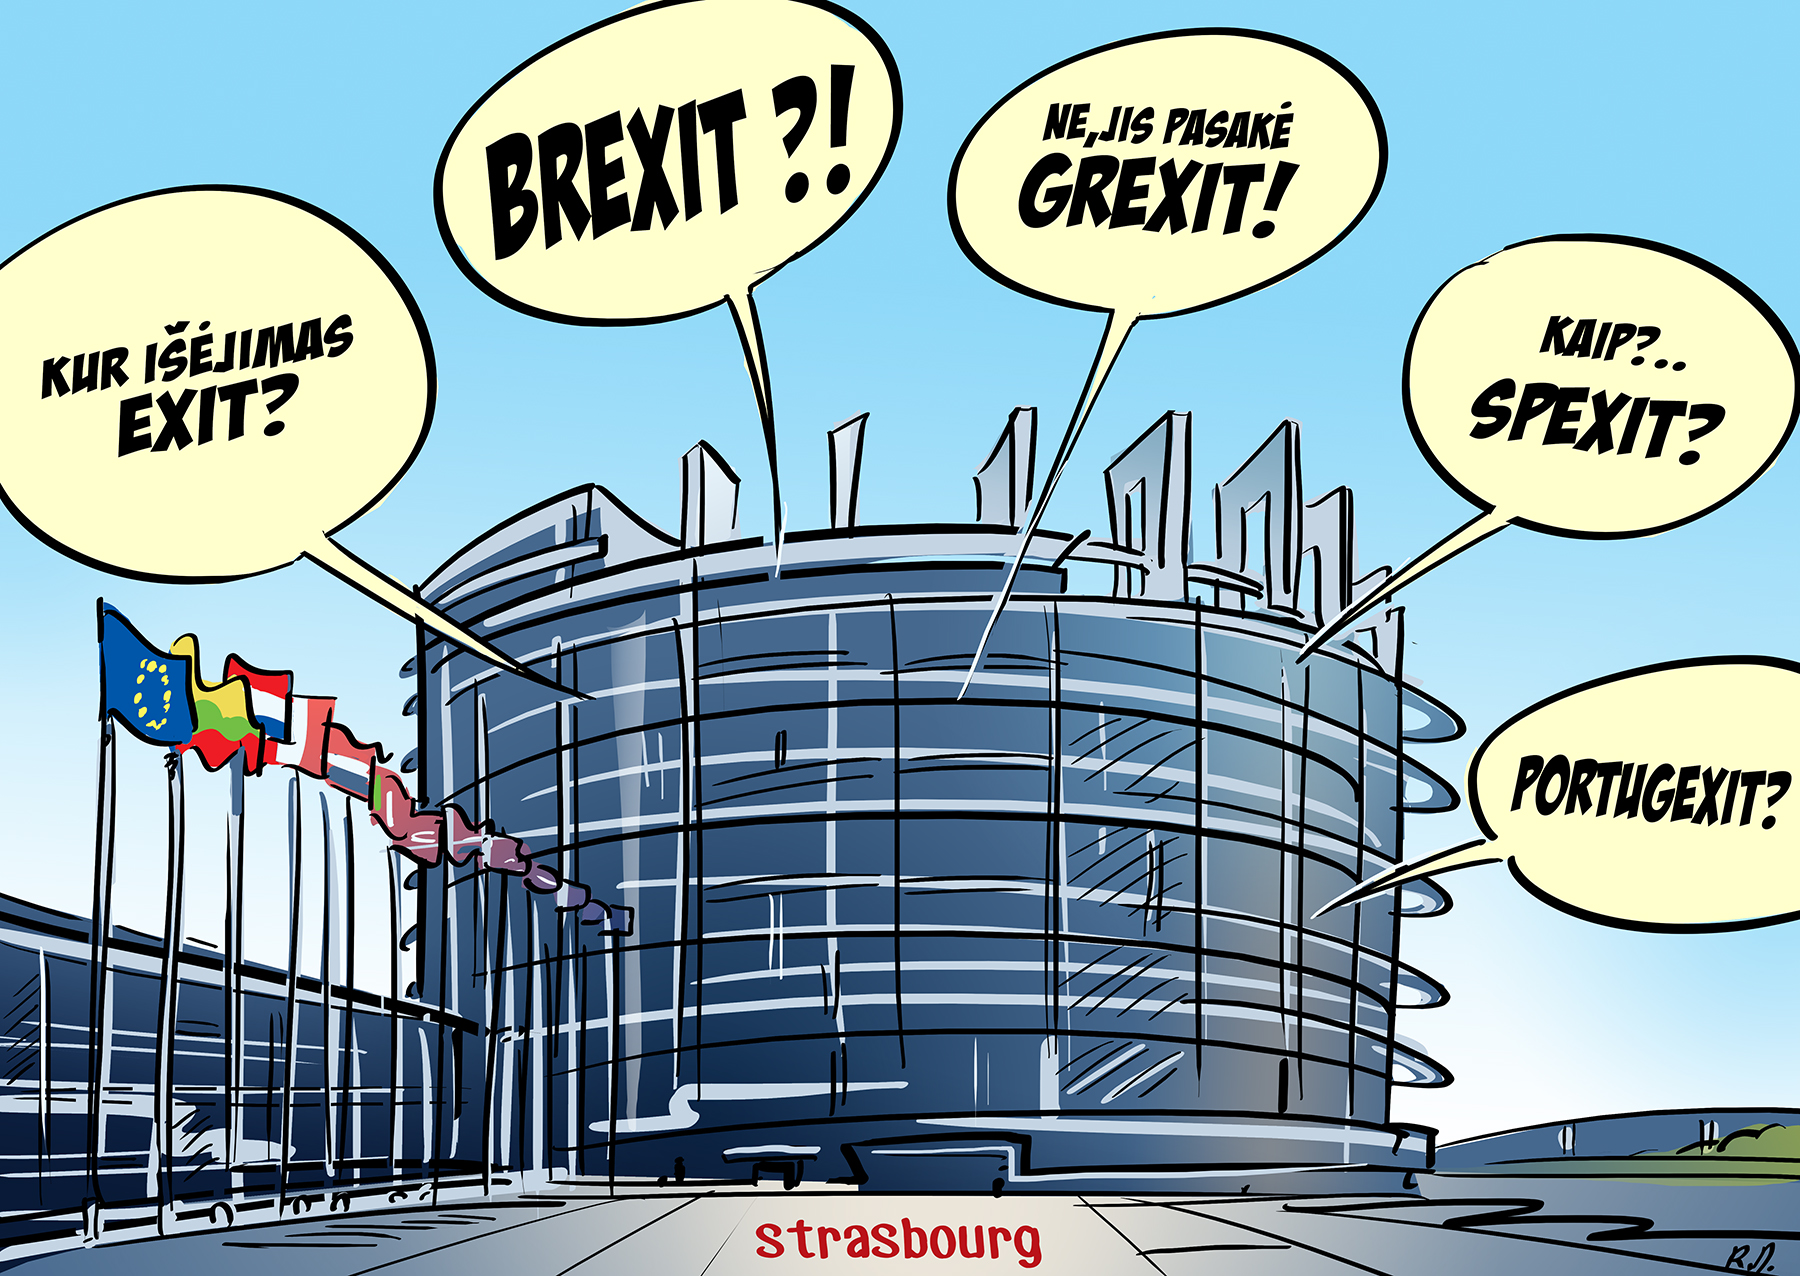 brexit-grexit-eu-cartoon.jpg